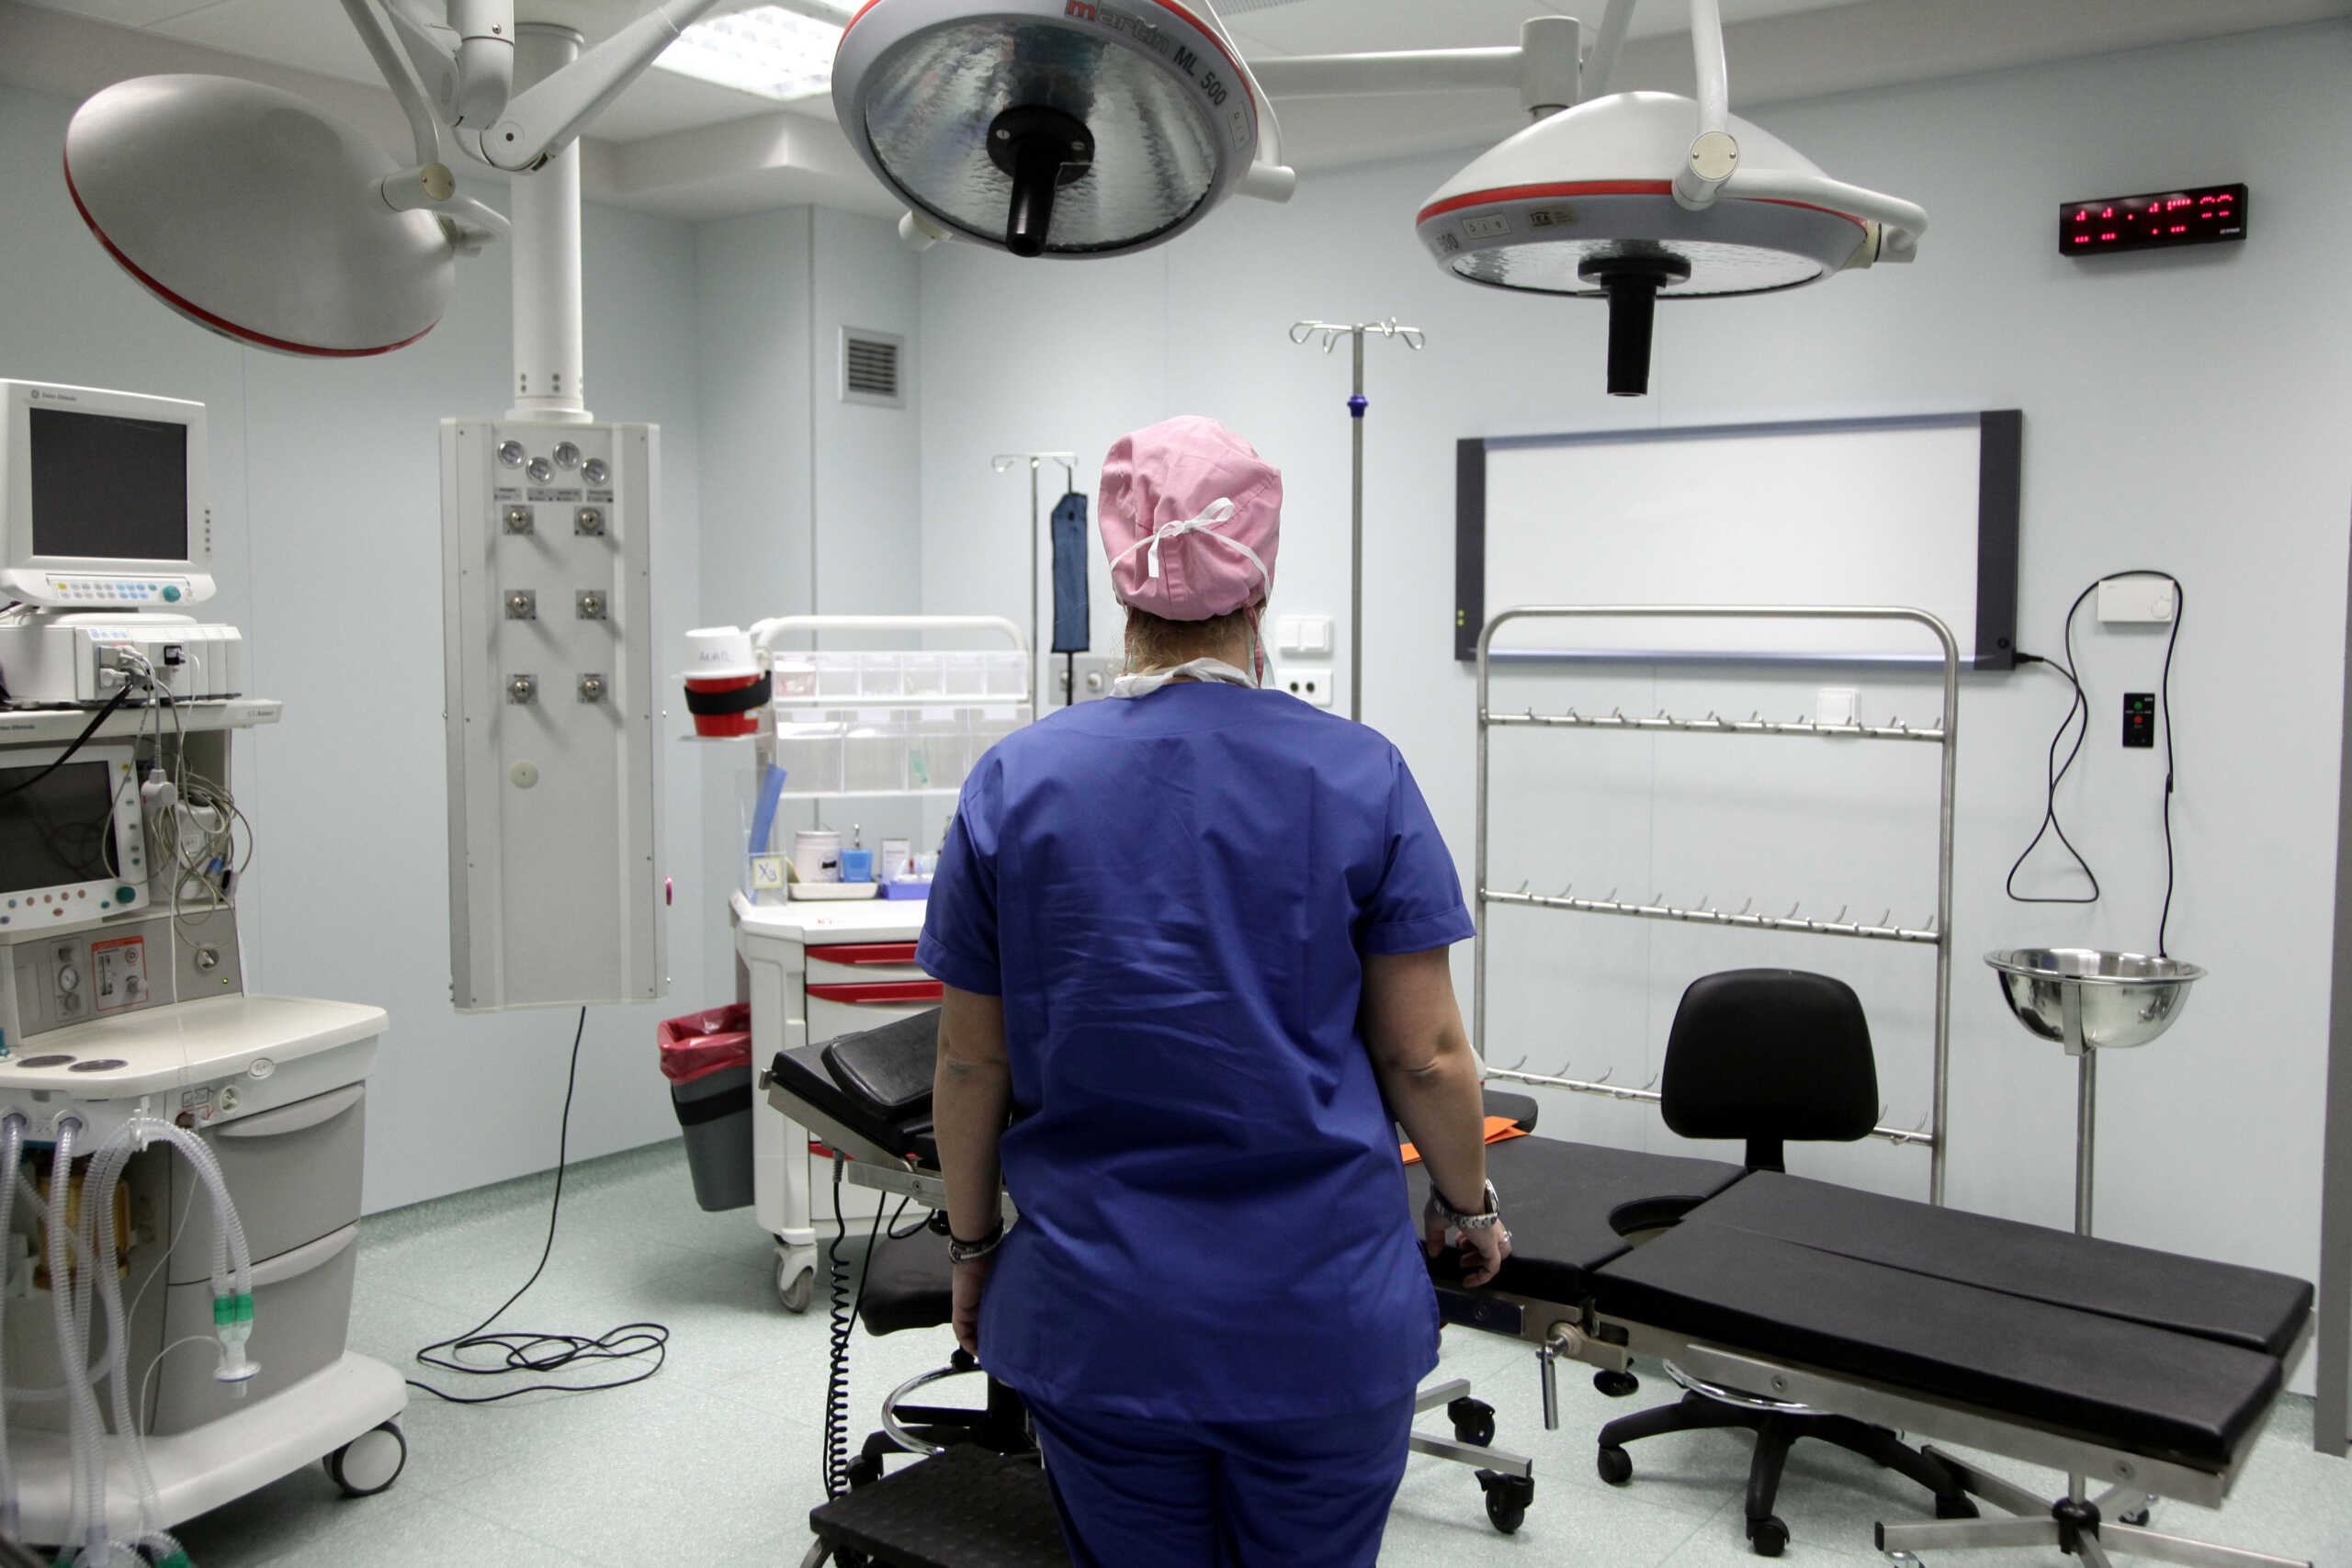 Απογευματινά χειρουργεία: Ομάδες γιατρών θα περιοδεύουν σε νοσοκομεία όλης της χώρας και θα κάνουν επεμβάσεις